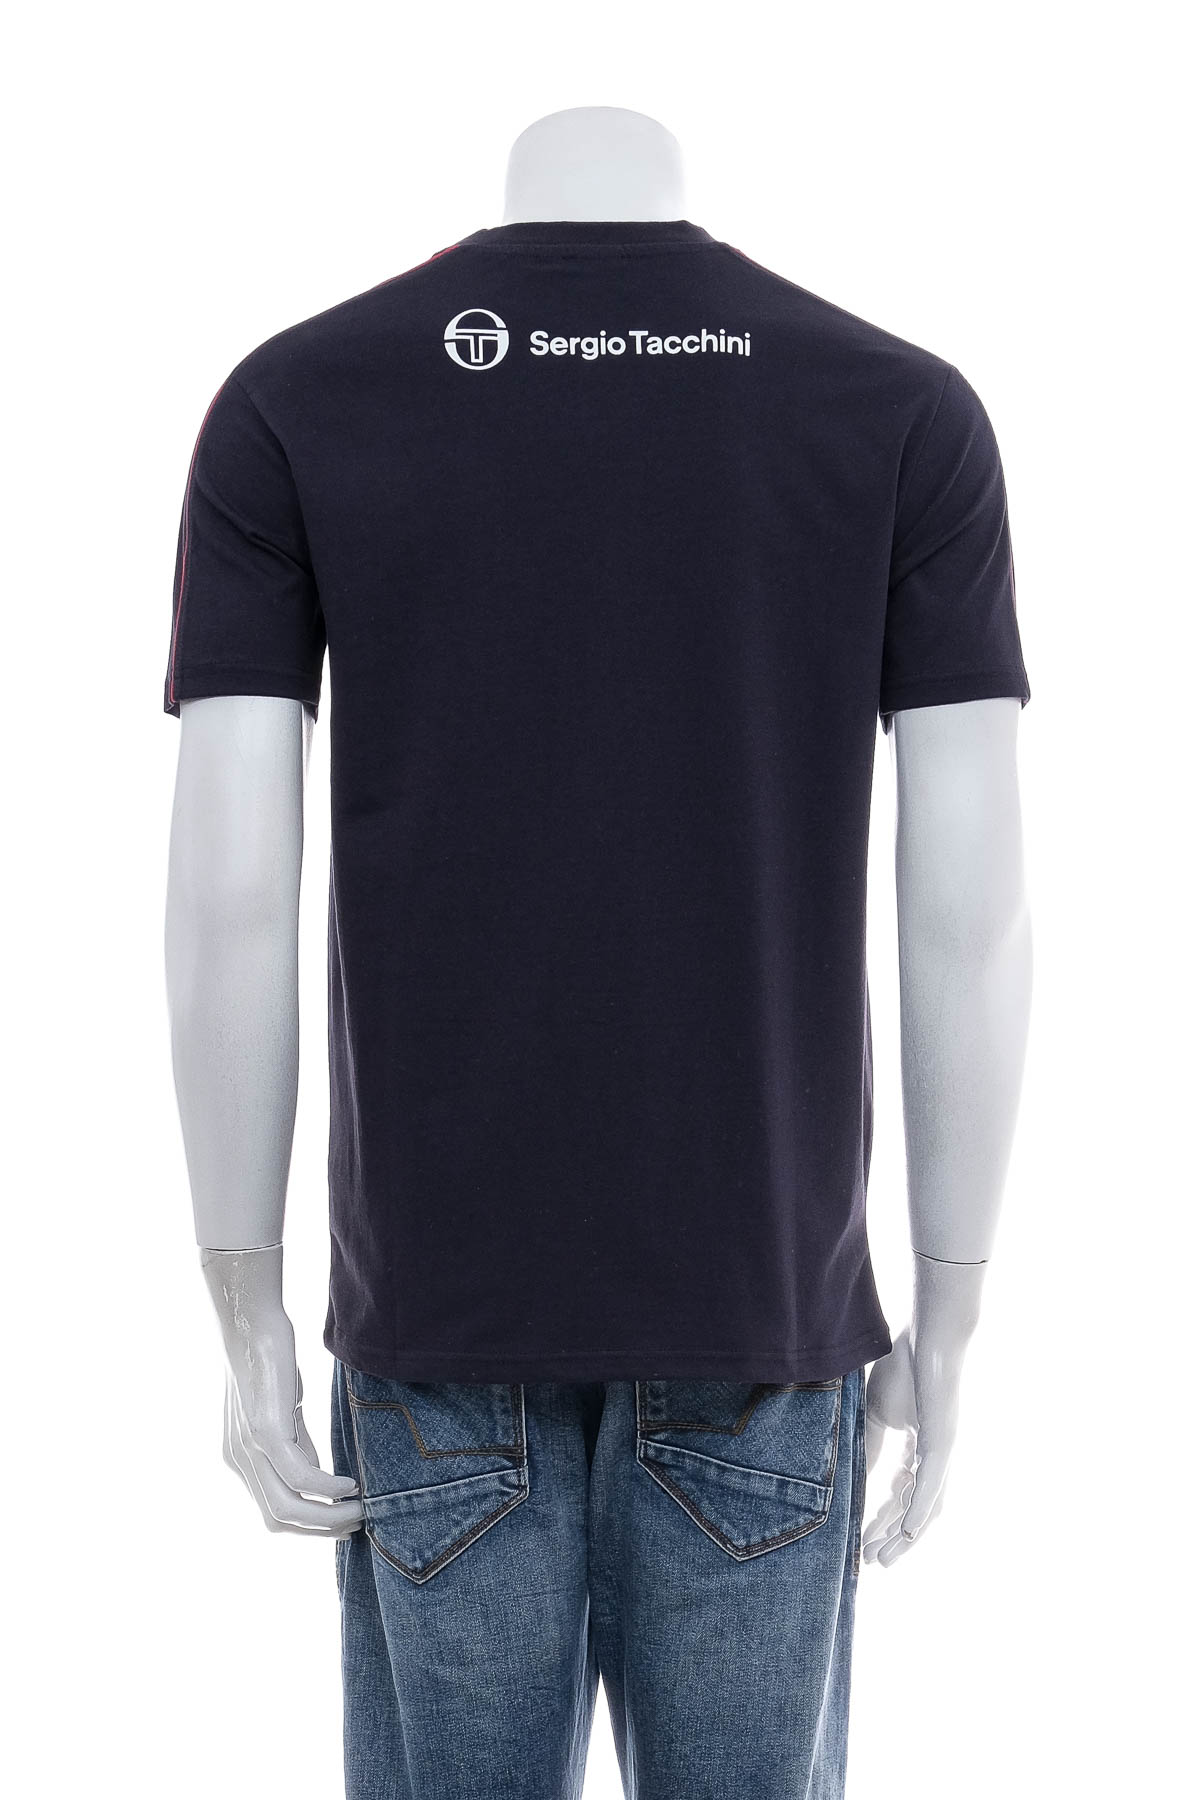 Ανδρικό μπλουζάκι - Sergio Tacchini - 1